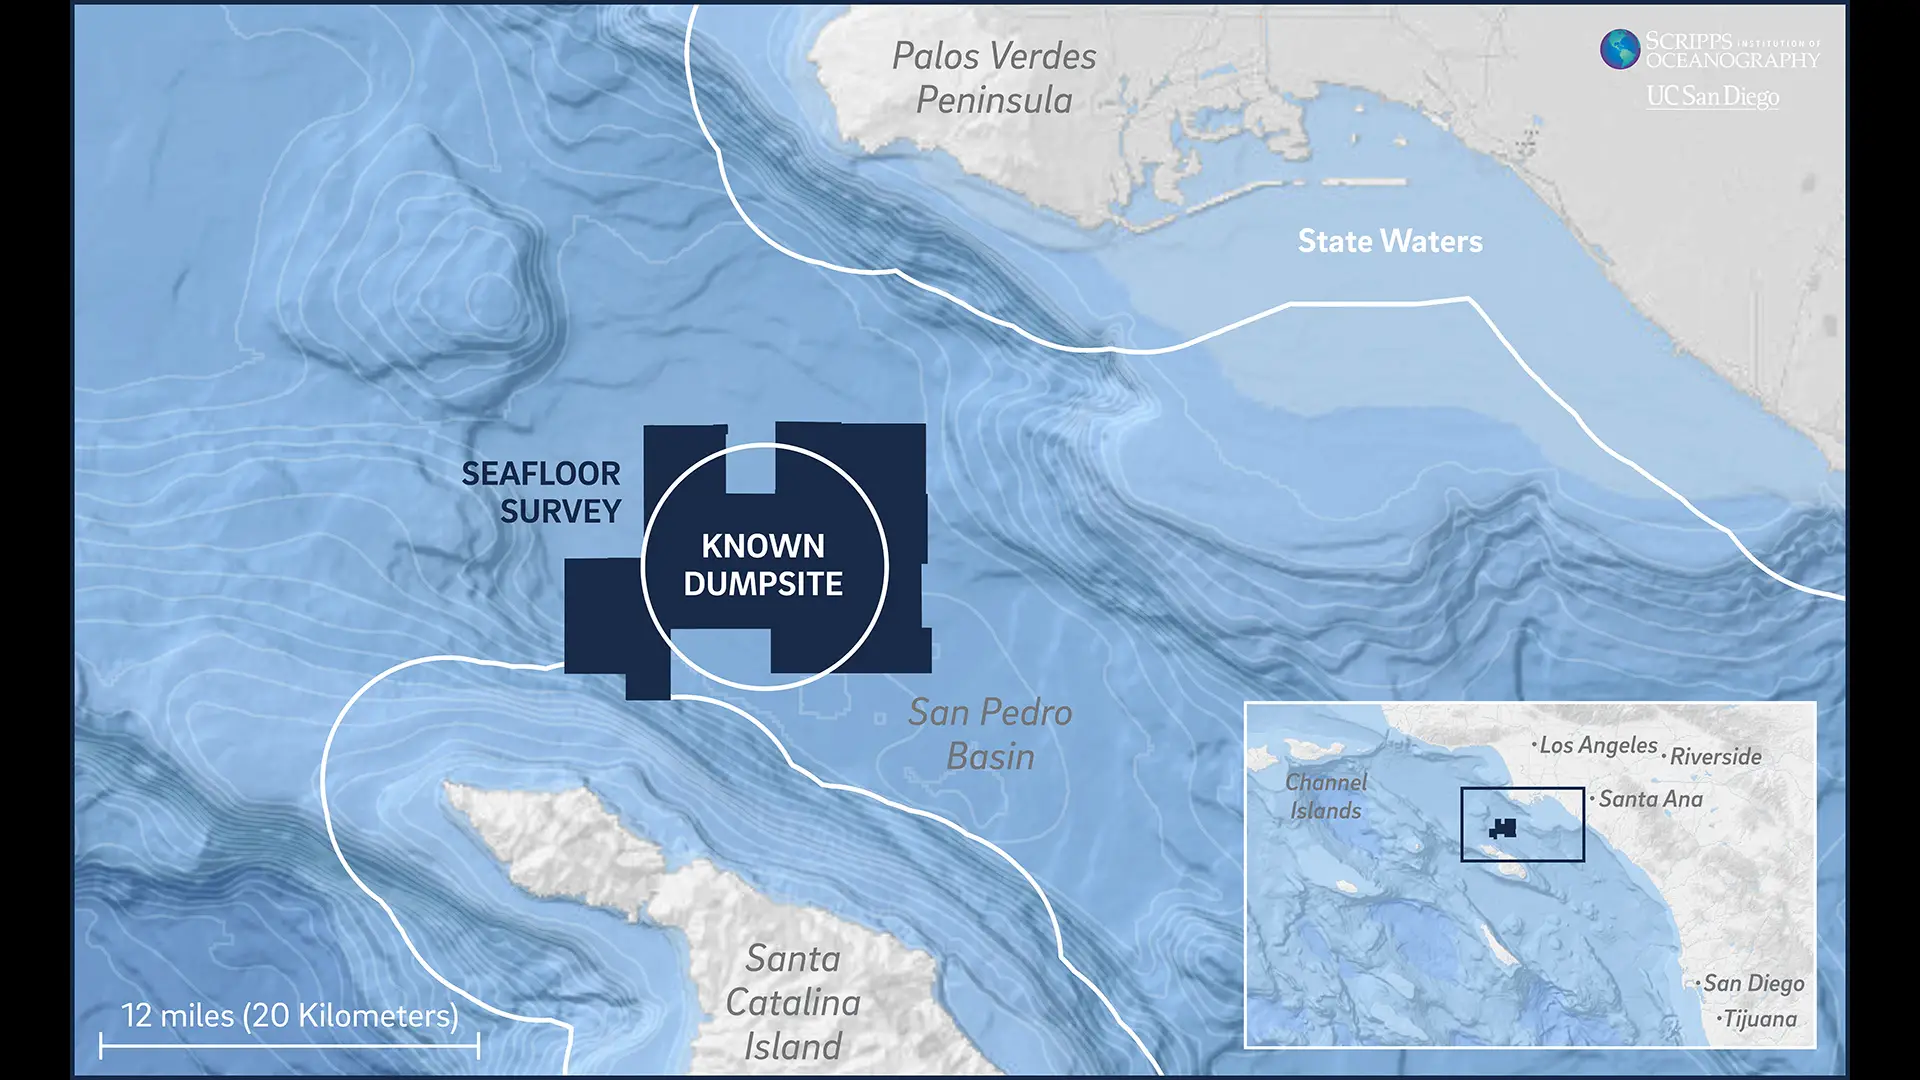 L'étude du fond marin a couvert 36 000 acres dans le bassin de San Pedro. La décharge connue se trouve à environ 12 miles au large de Palos Verdes et à 13 miles de l'île de Santa Catalina.